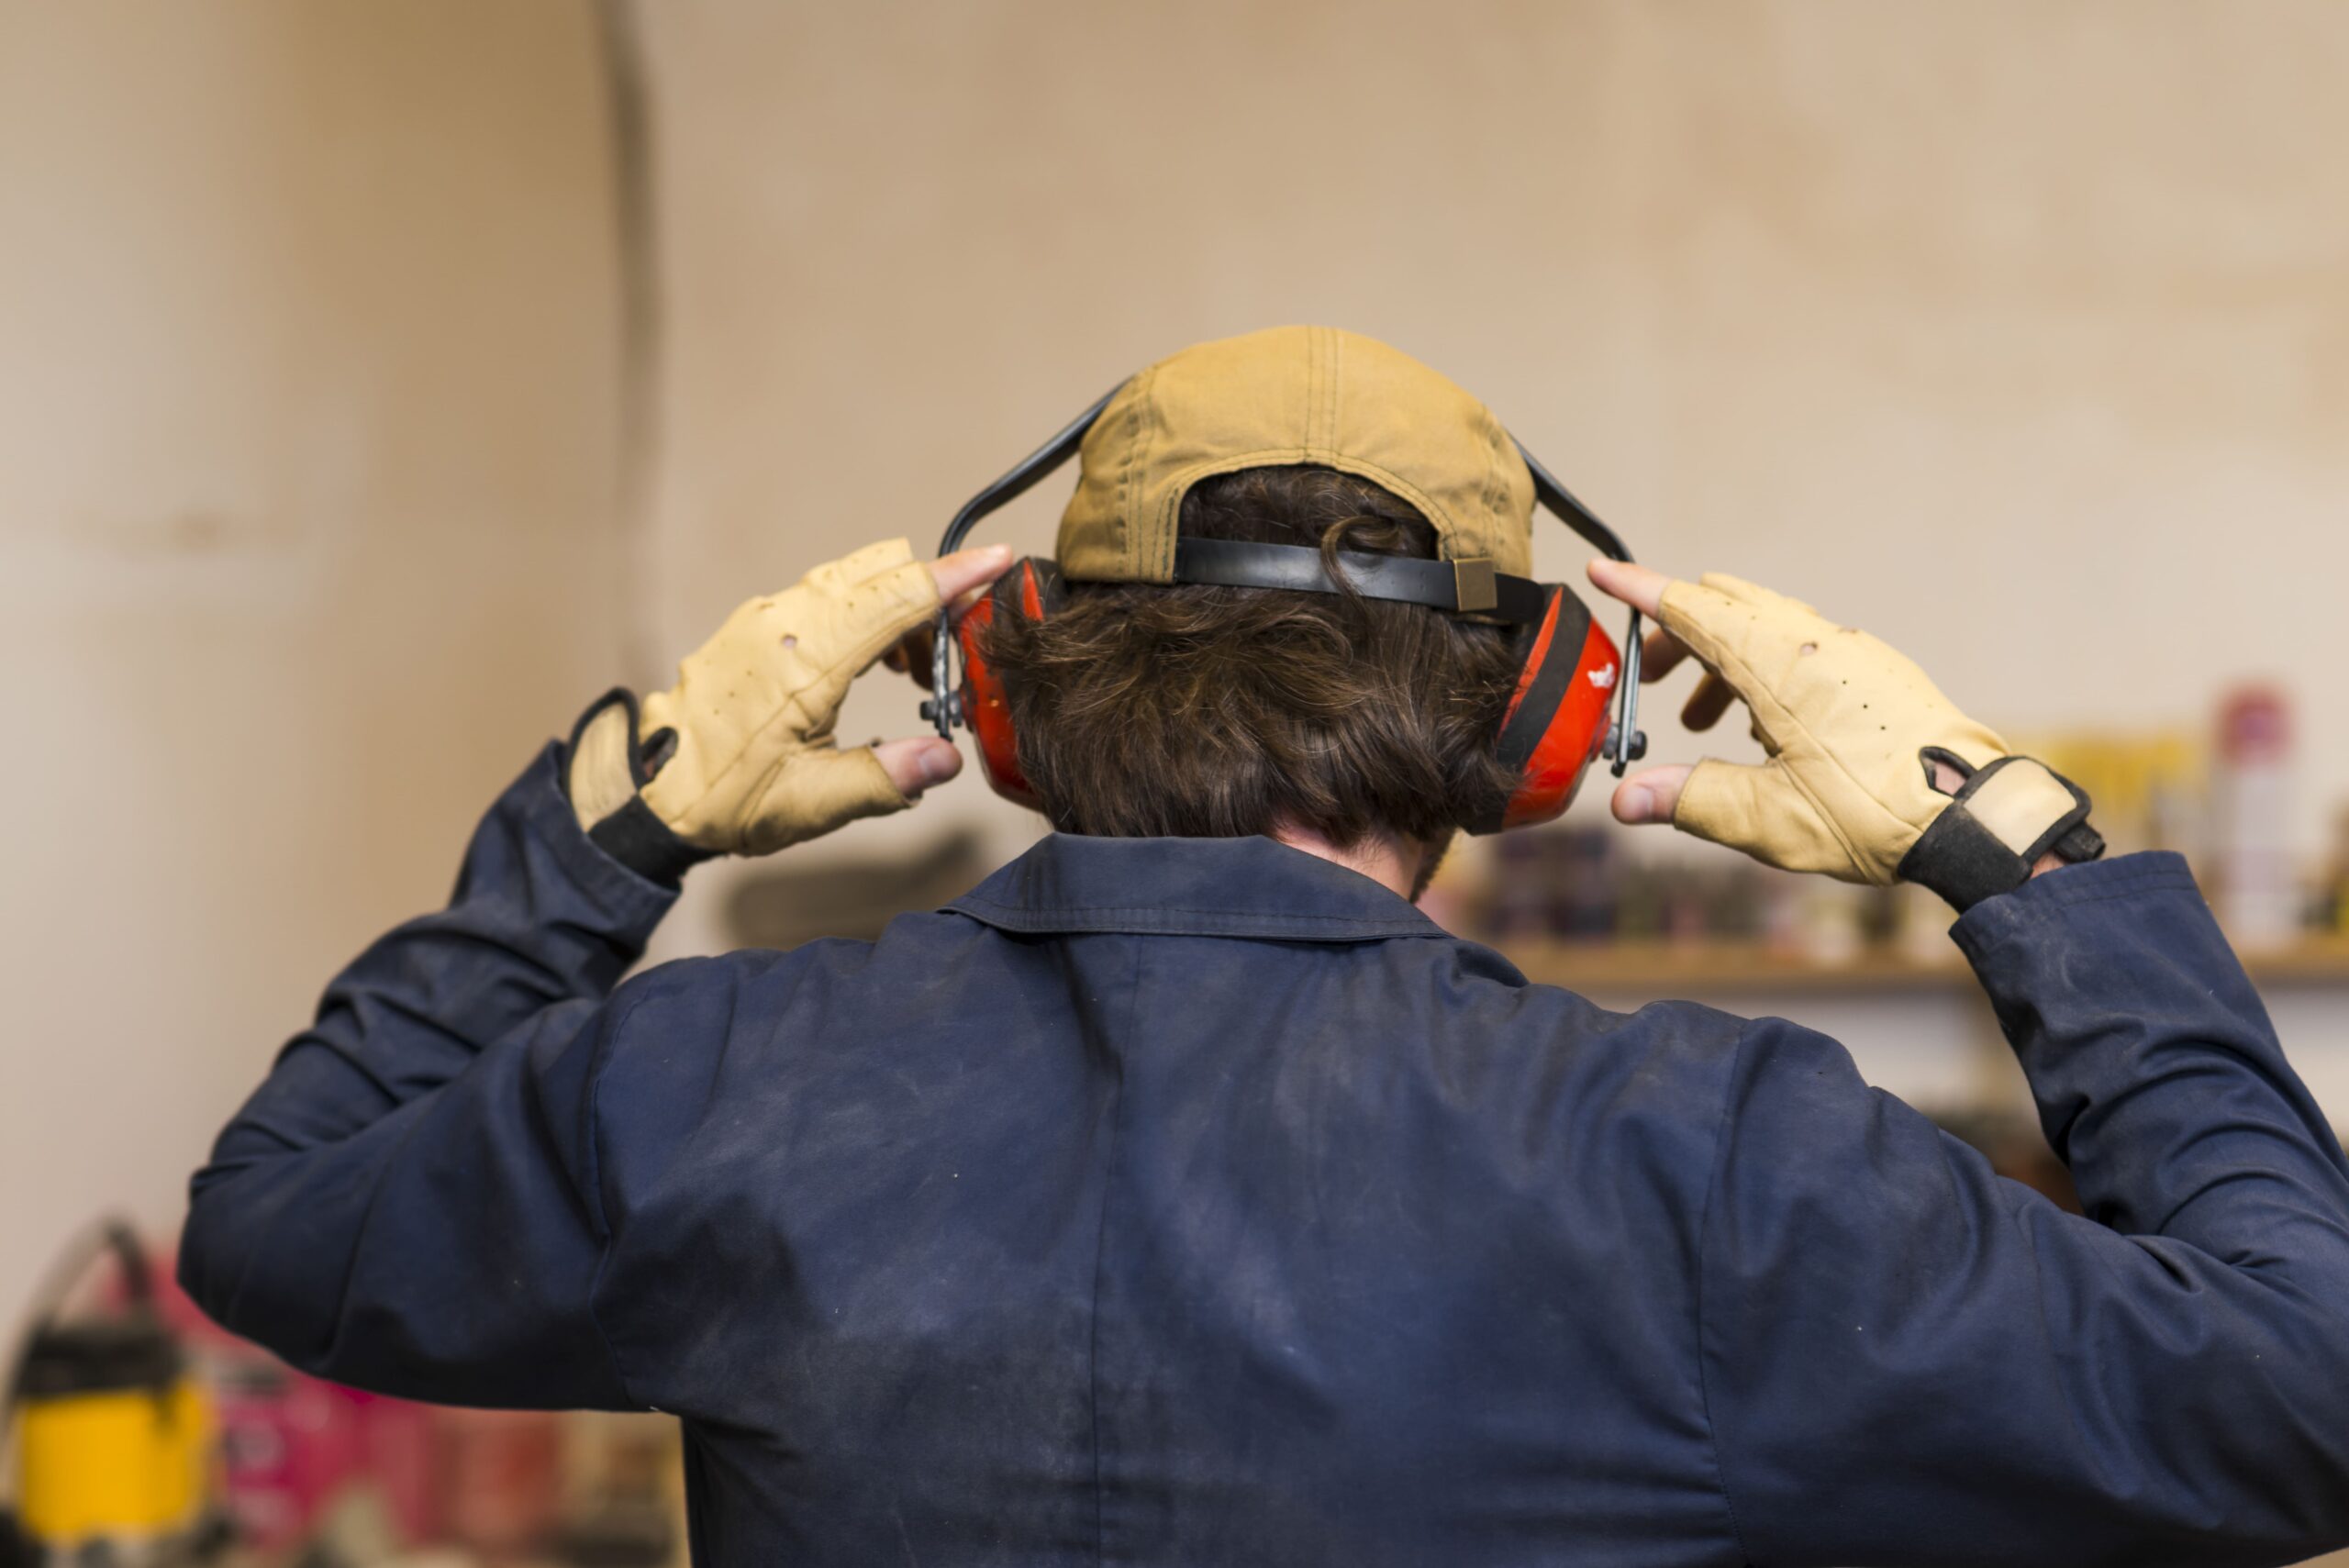 En el cuello, colgar auriculares insonorizados amarillos. protección  auditiva contra ruidos fuertes equipos de trabajo. se utilizan en obras de  construcción, instalaciones de producción con altos niveles de ruido.